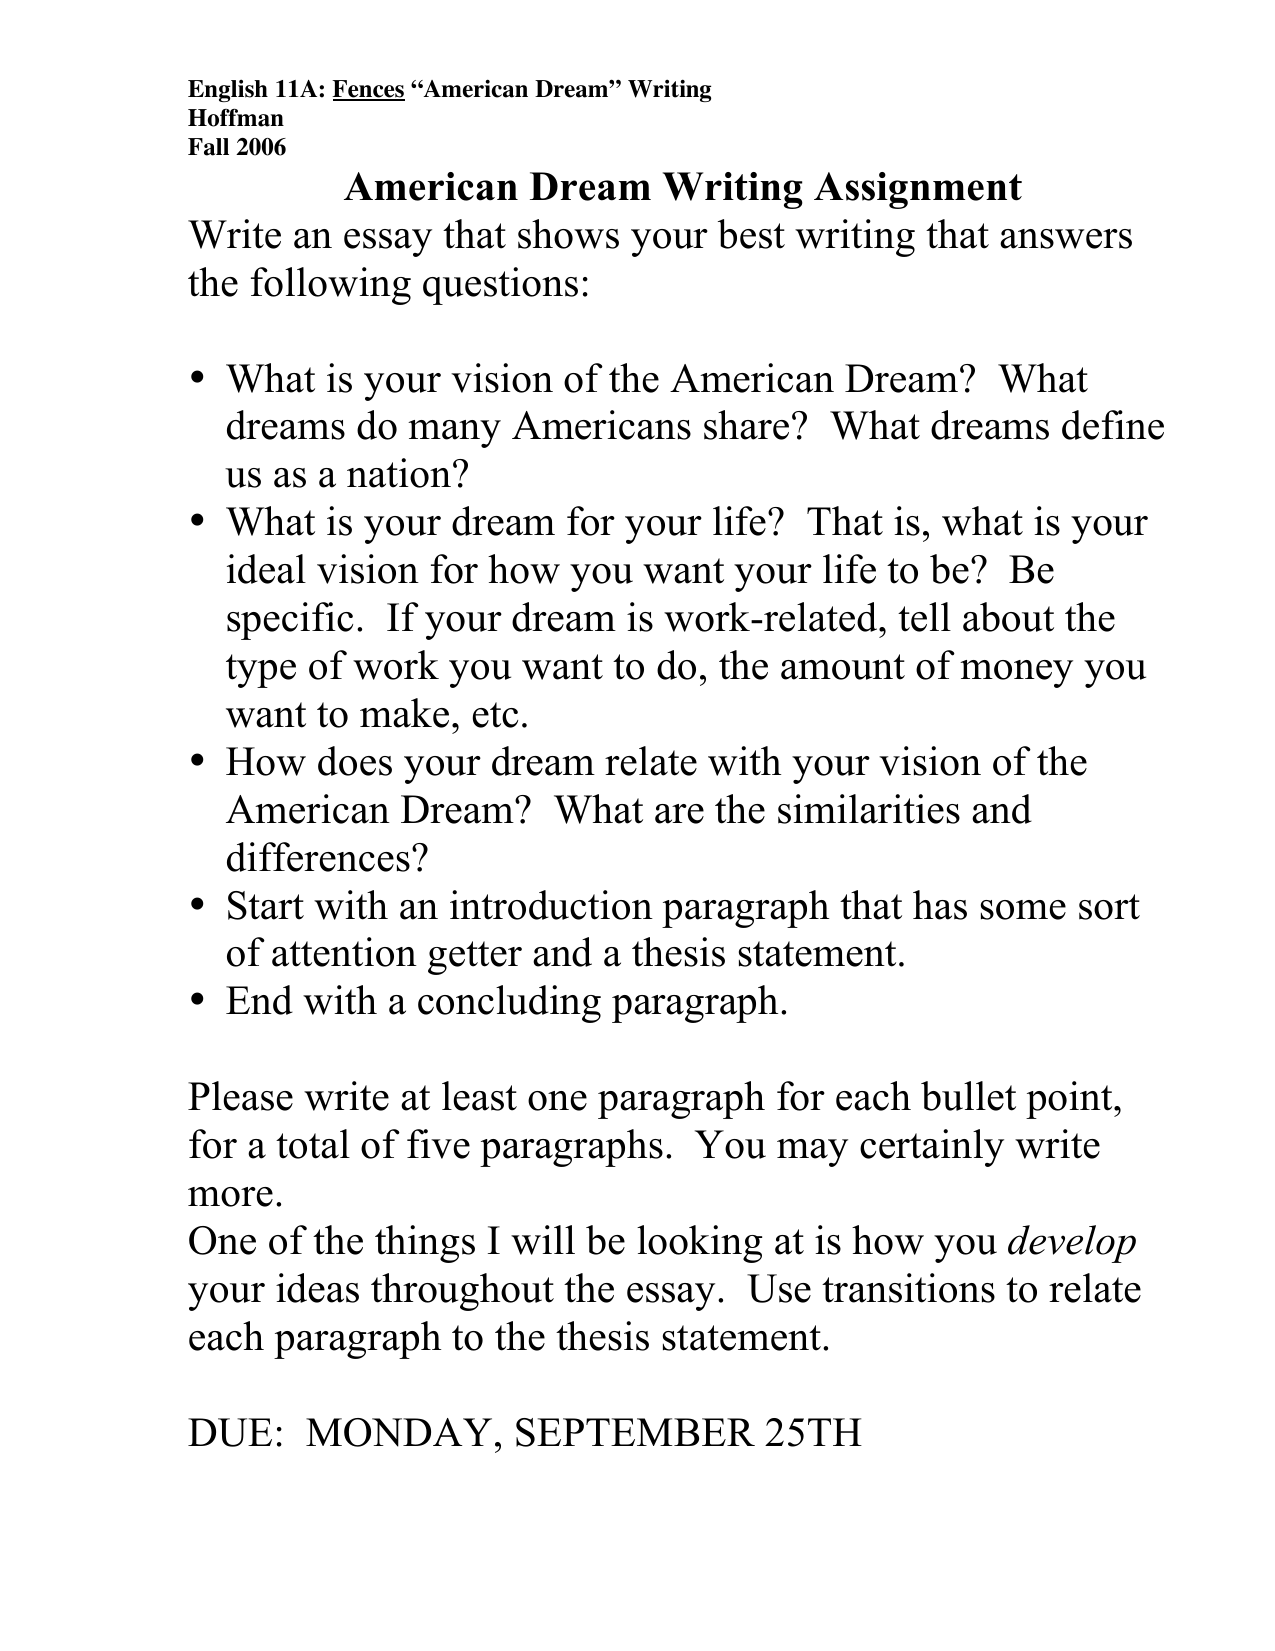 An essay on a dream